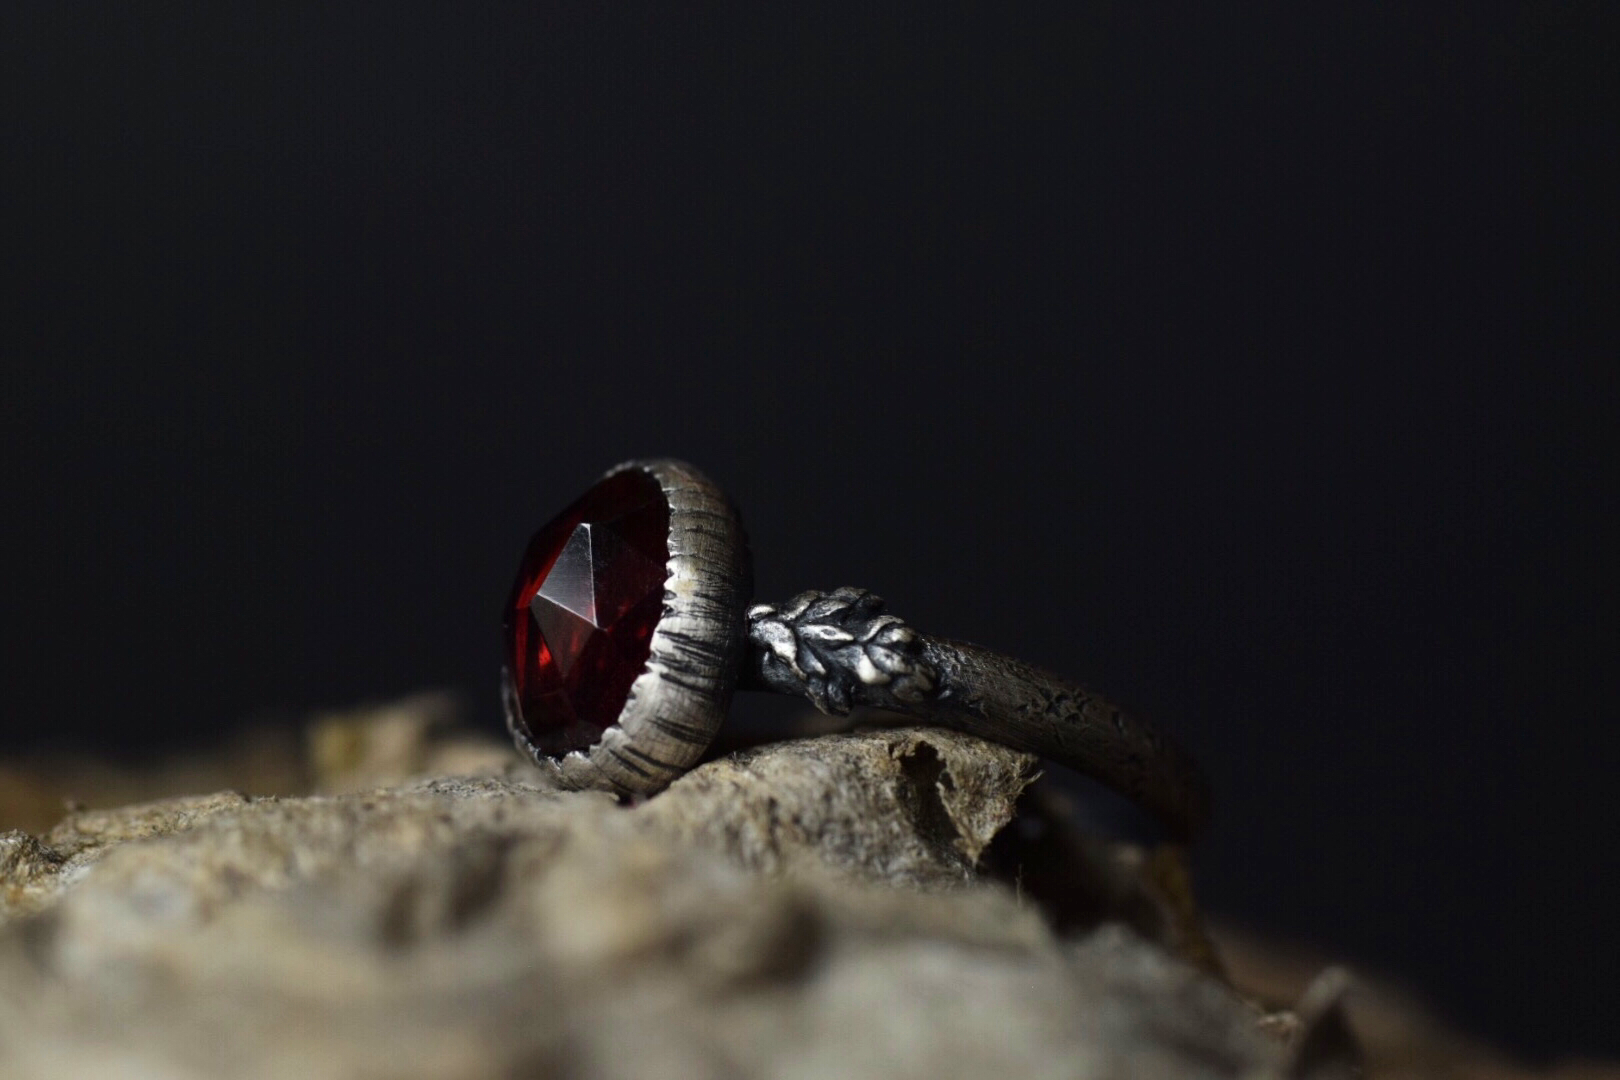 Garnet Fern Ring - Size 7